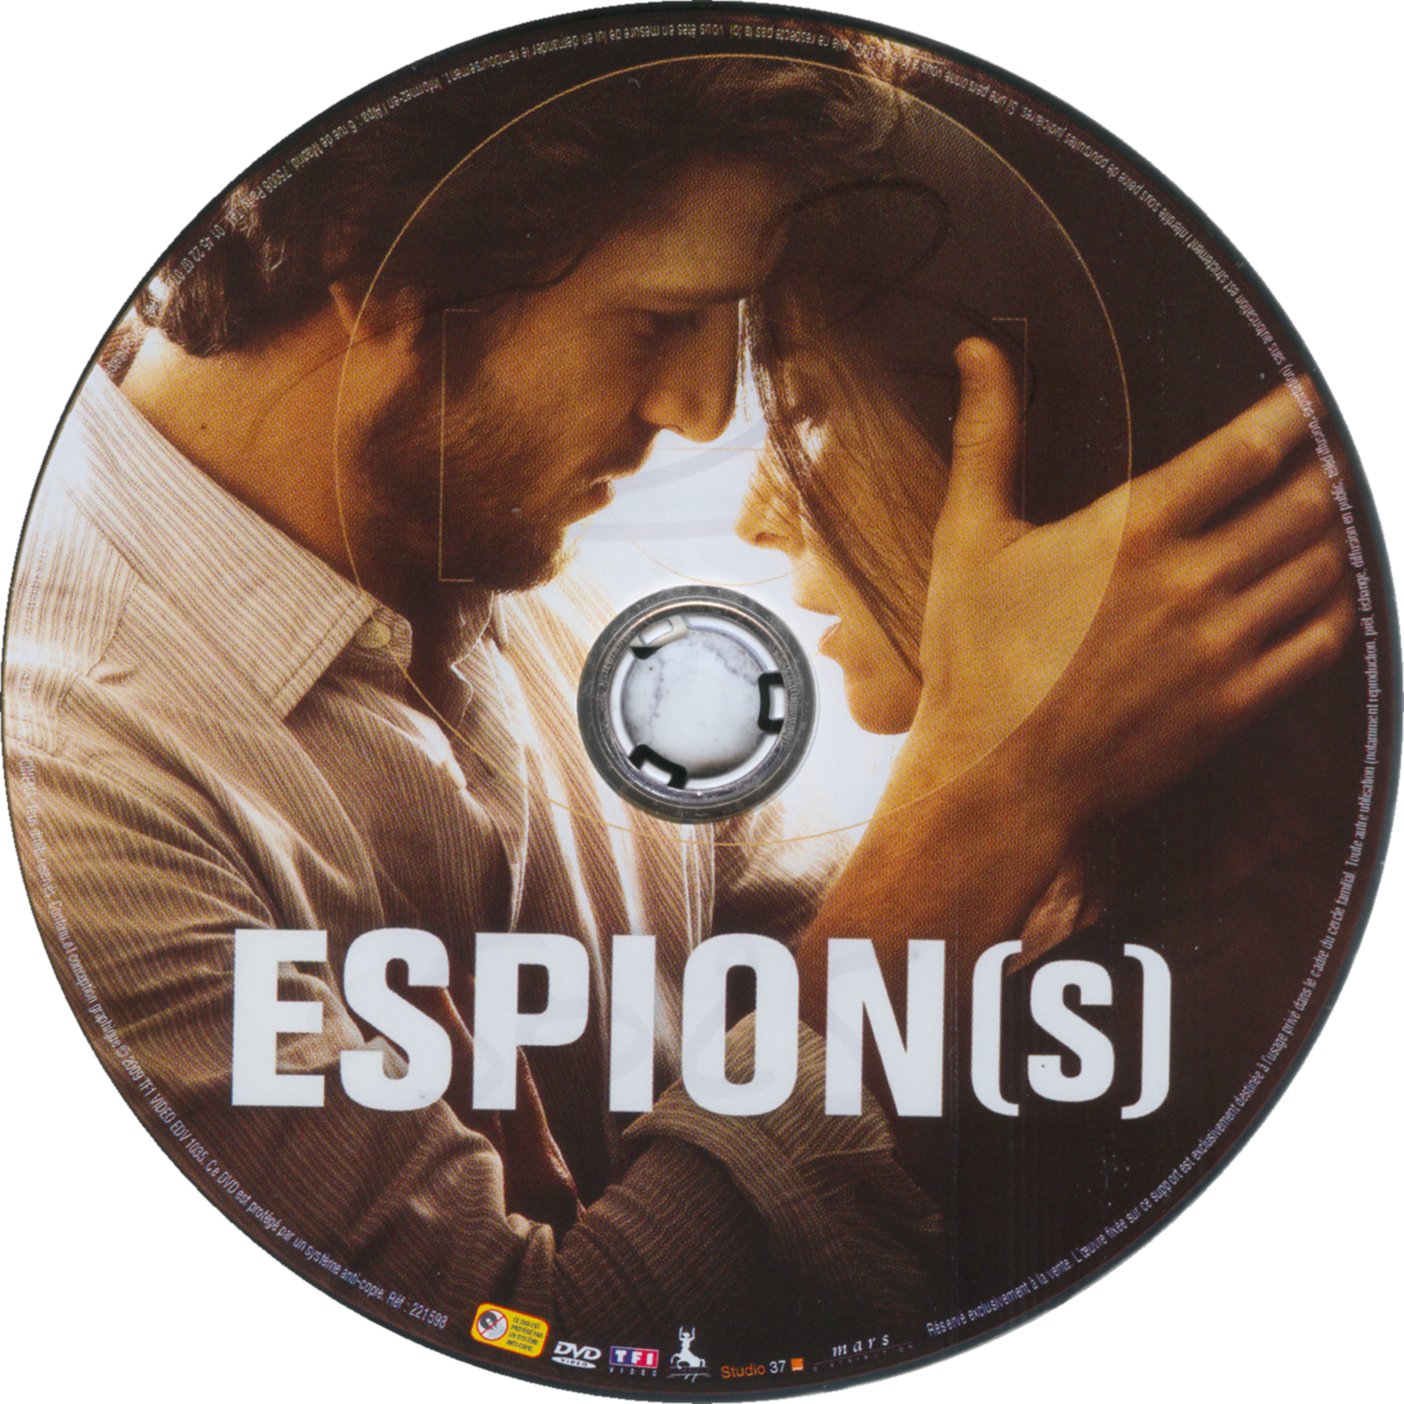 Espion(s)